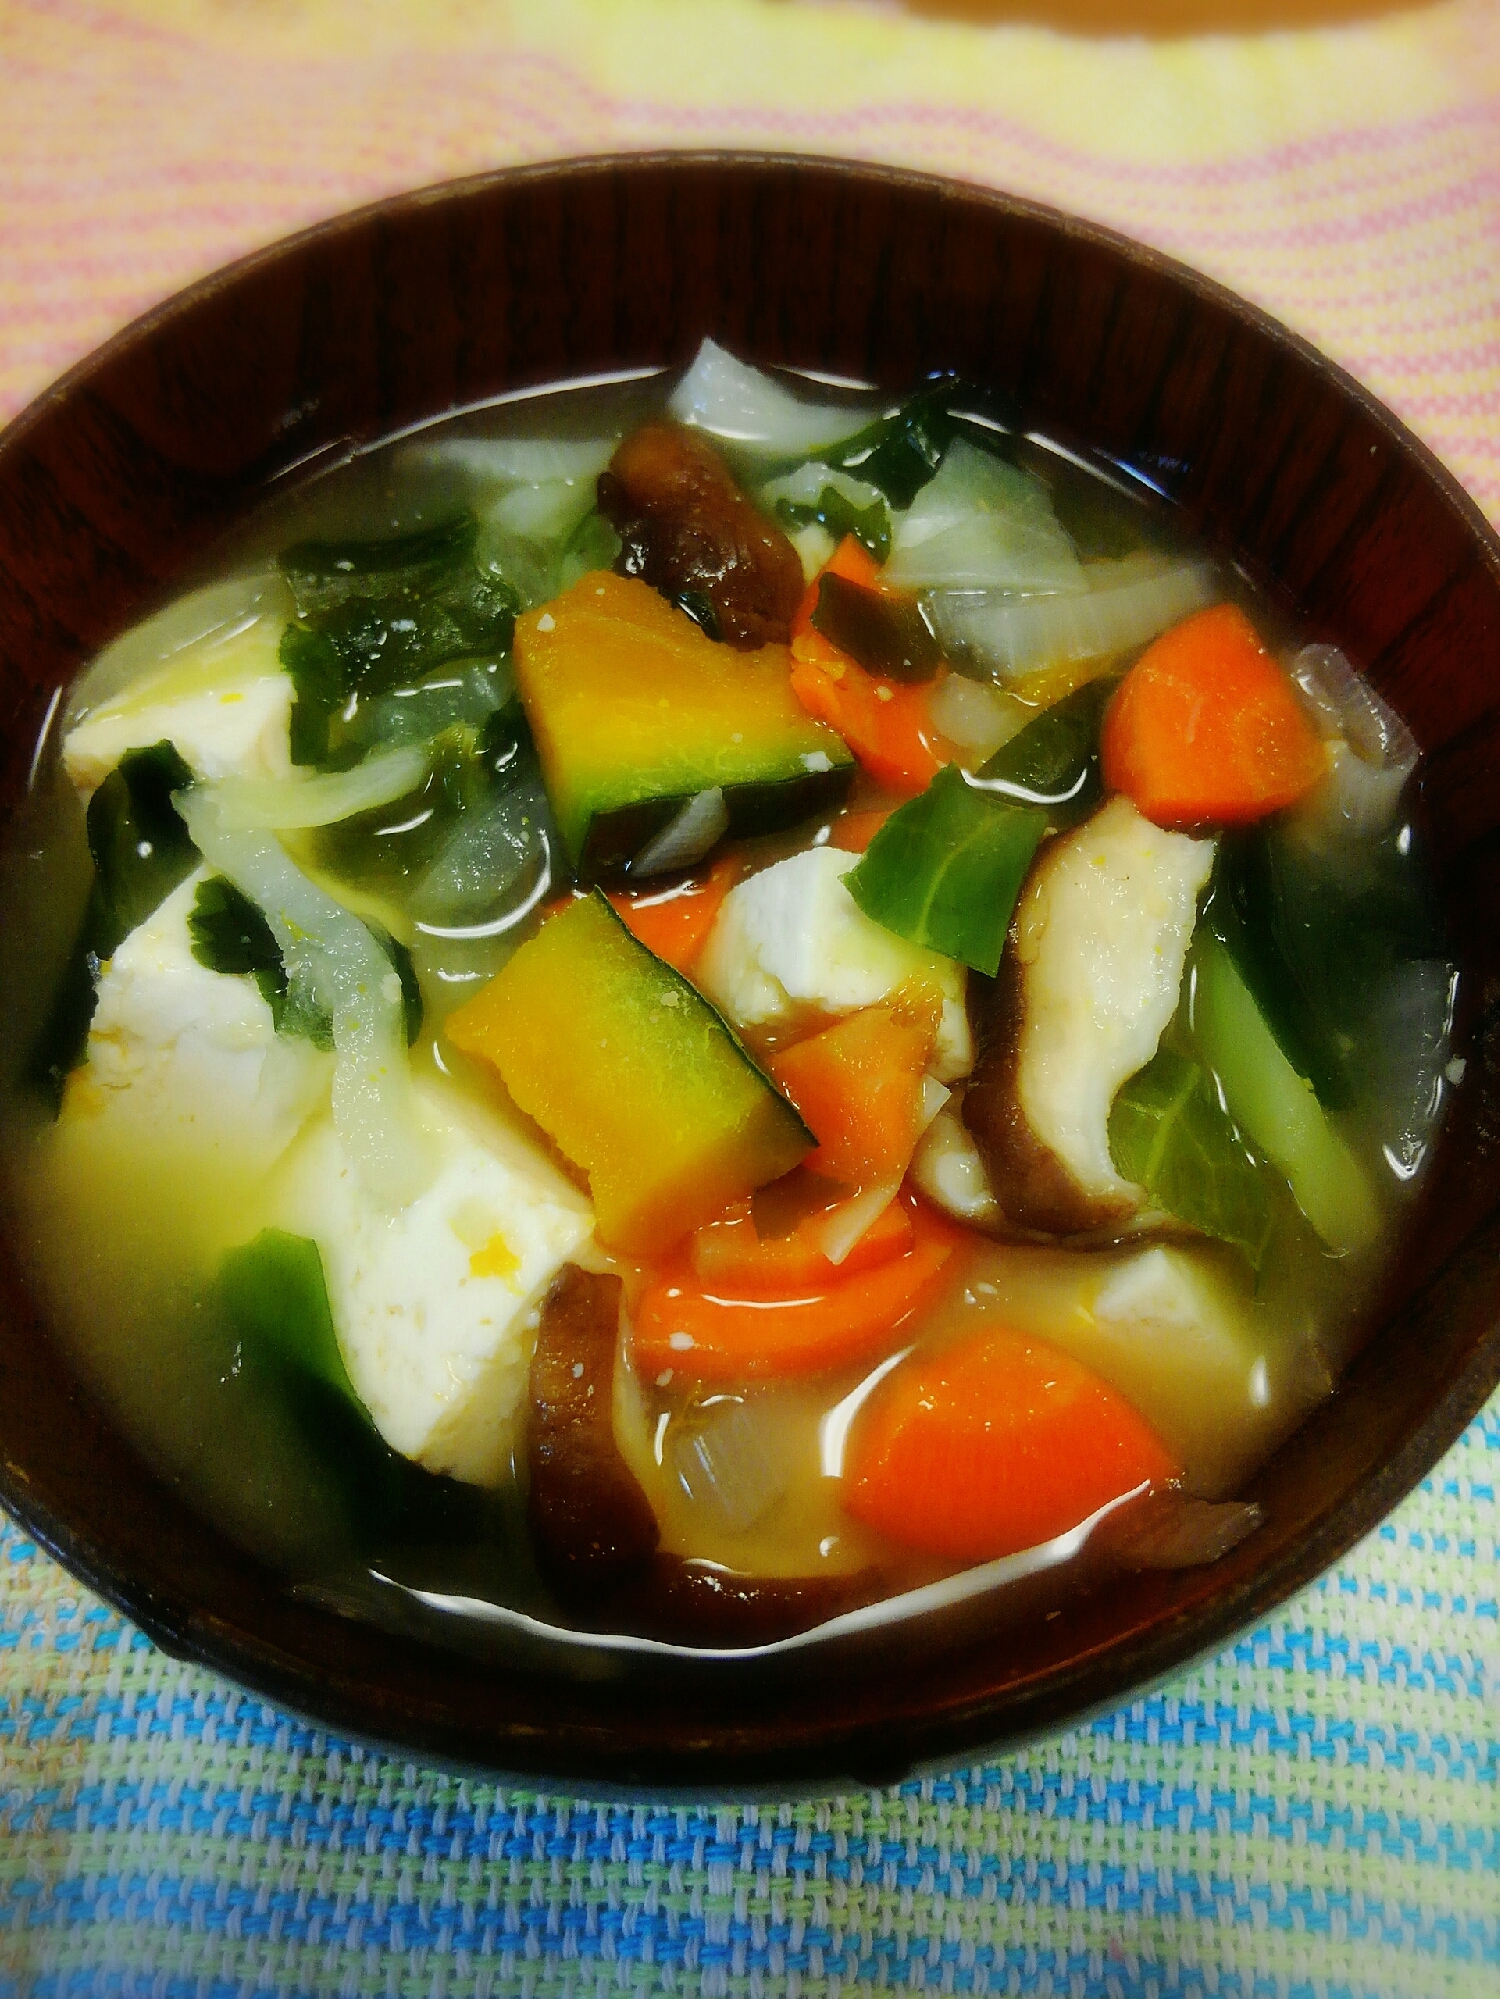 ファイトケミカルスープの素で豆腐味噌汁(^o^)